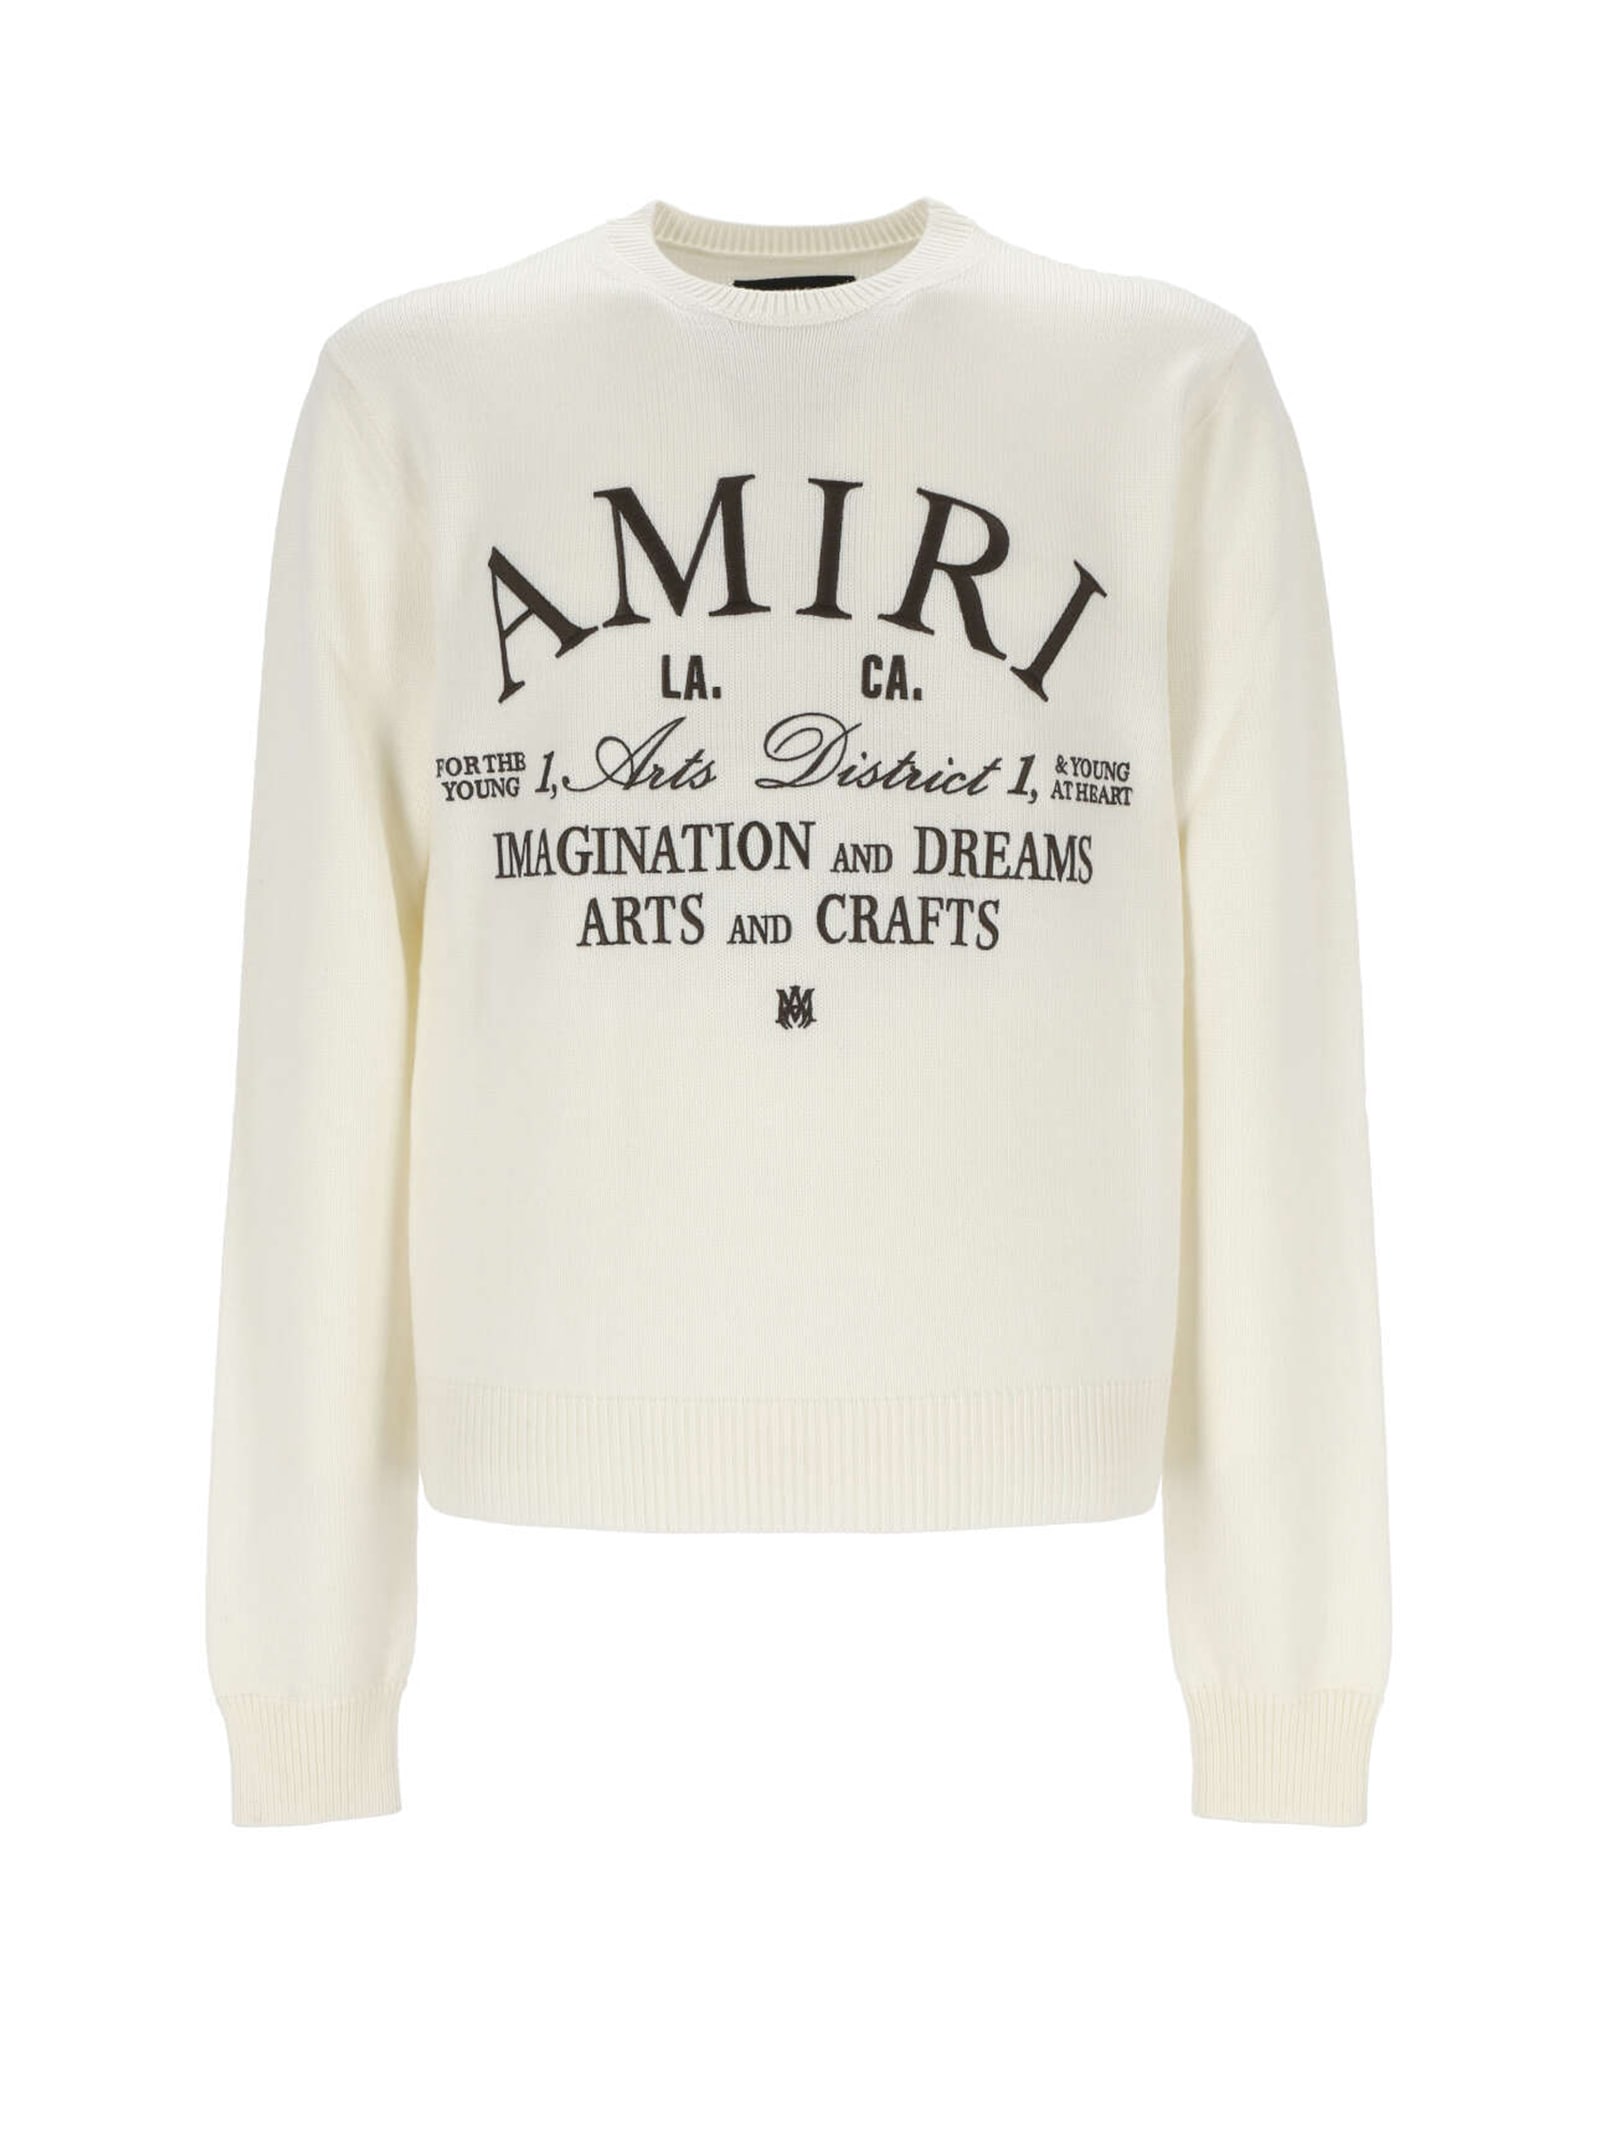 AMIRI Sweater